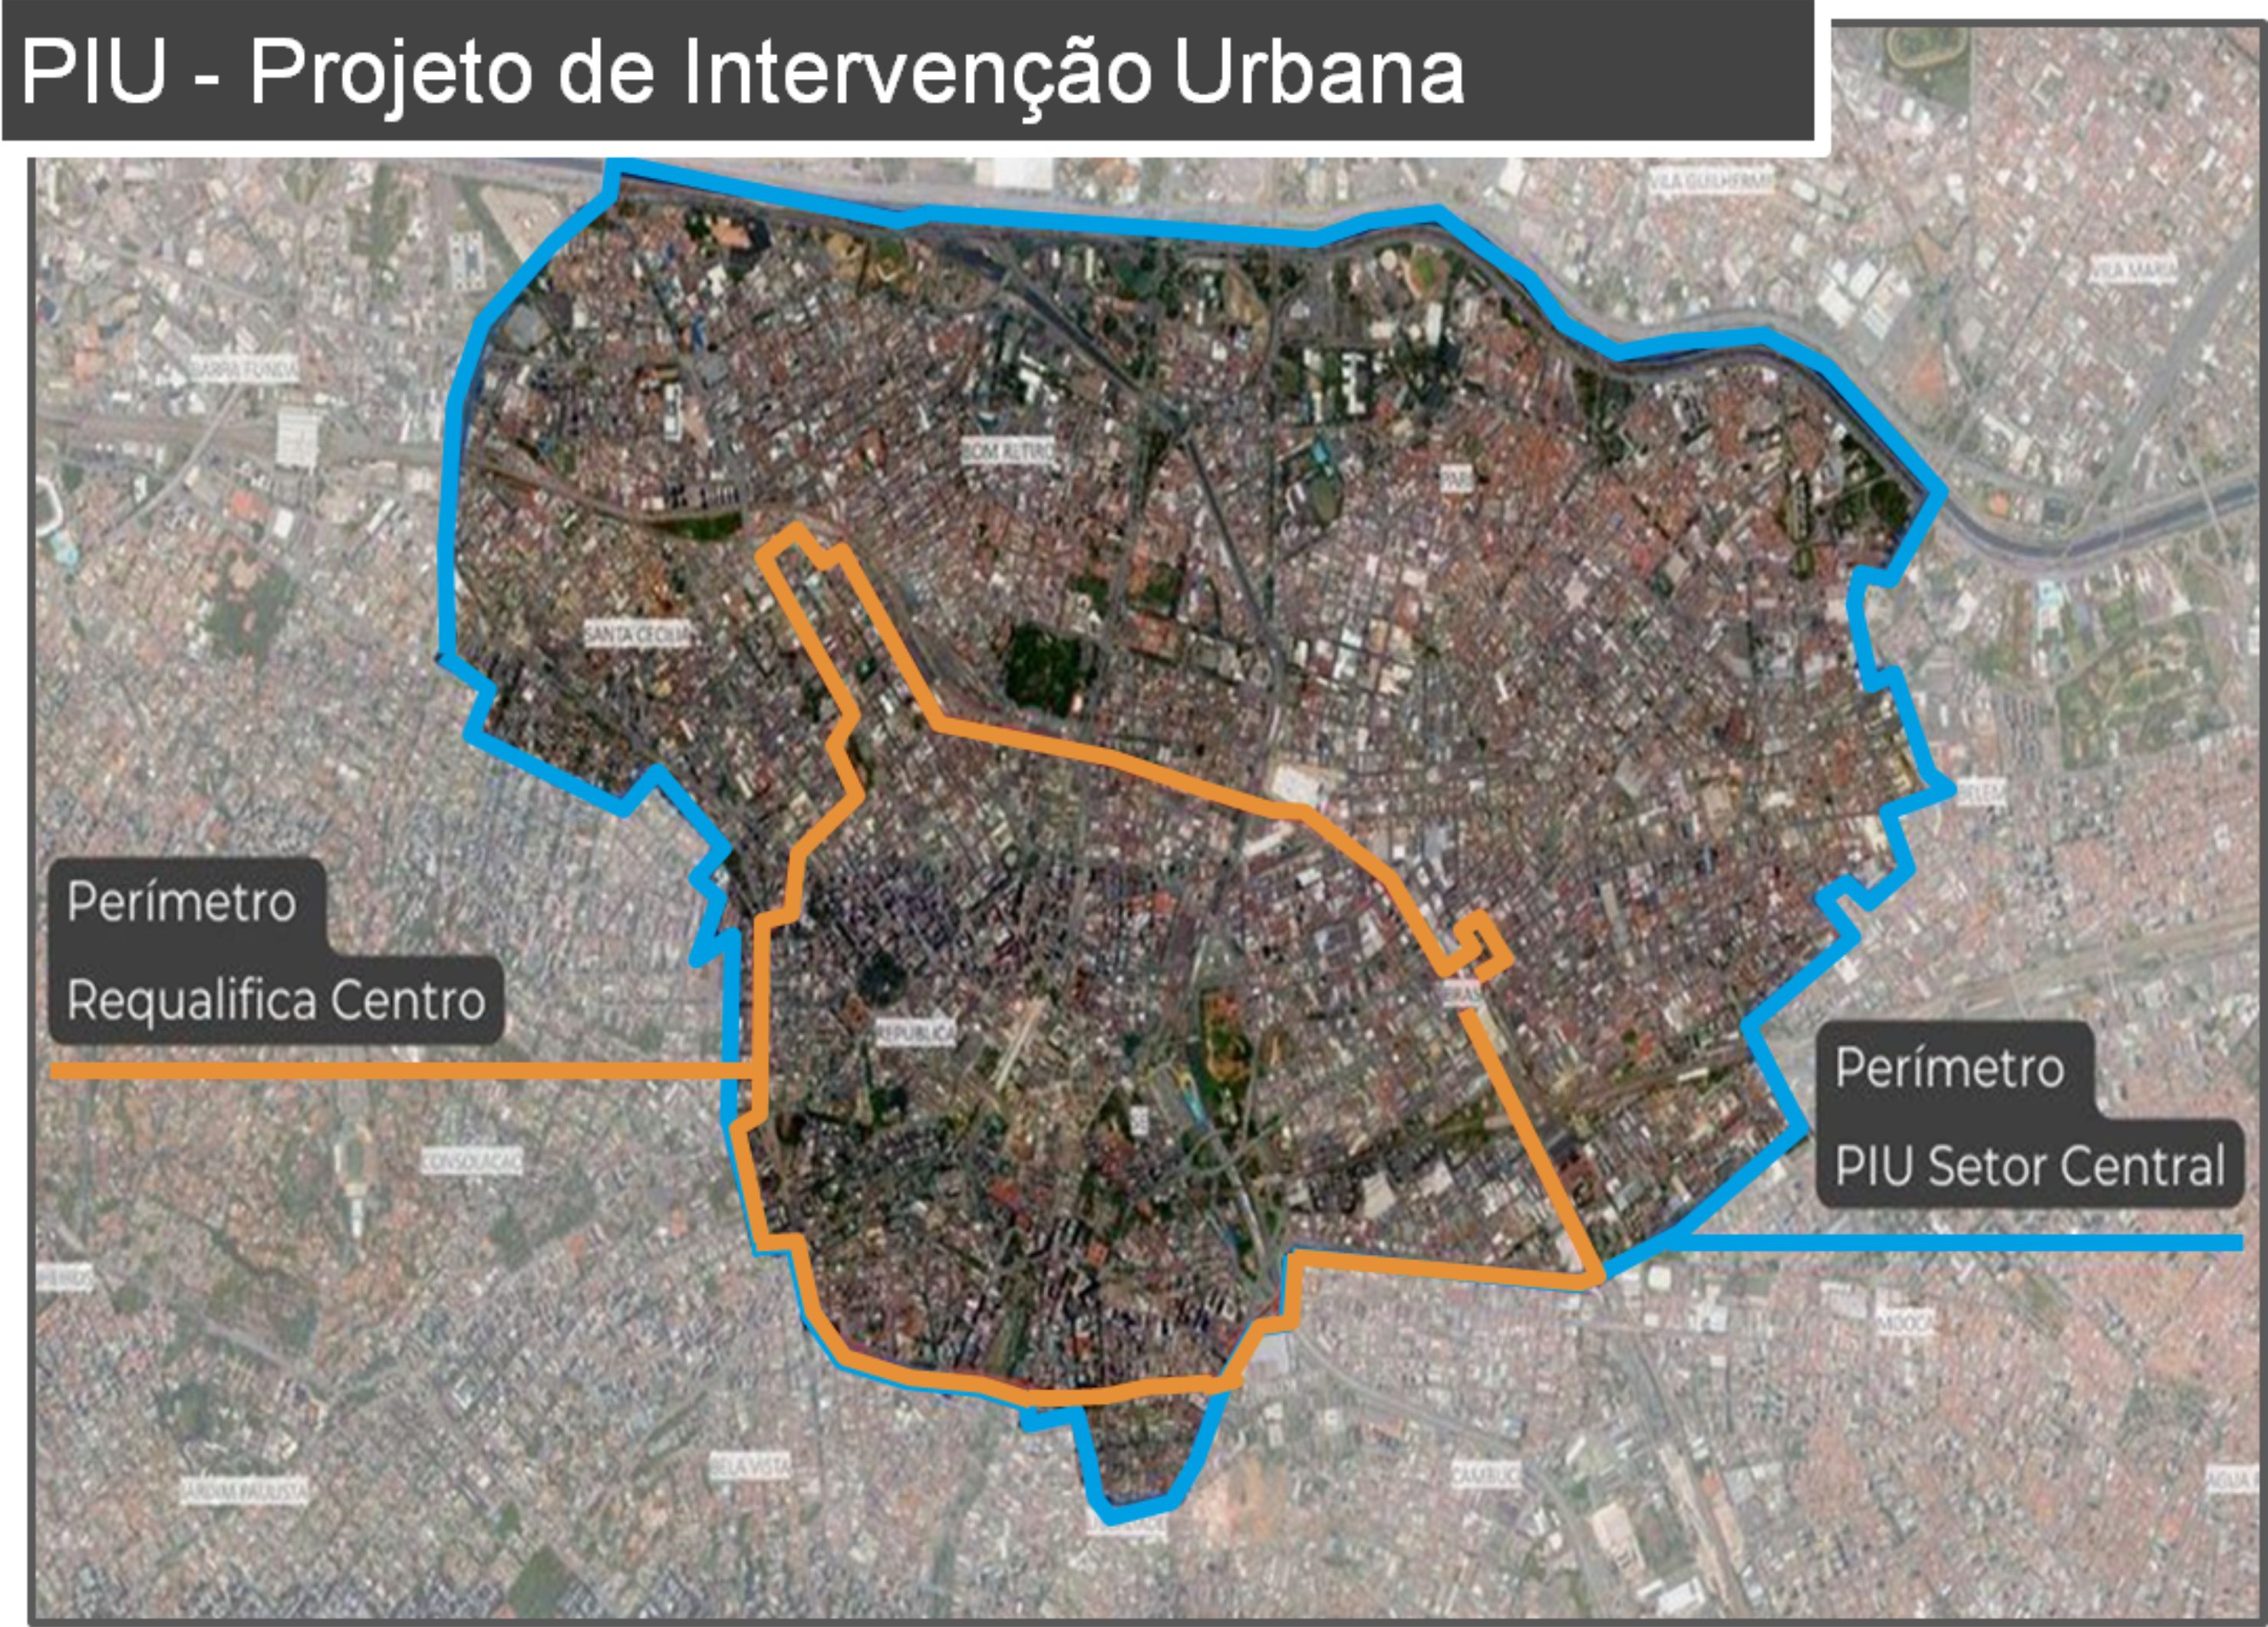 imagem do mapa central da cidade de São Paulo delimitando o Perímetro Requalifica Centro e Perímetro Setor Central